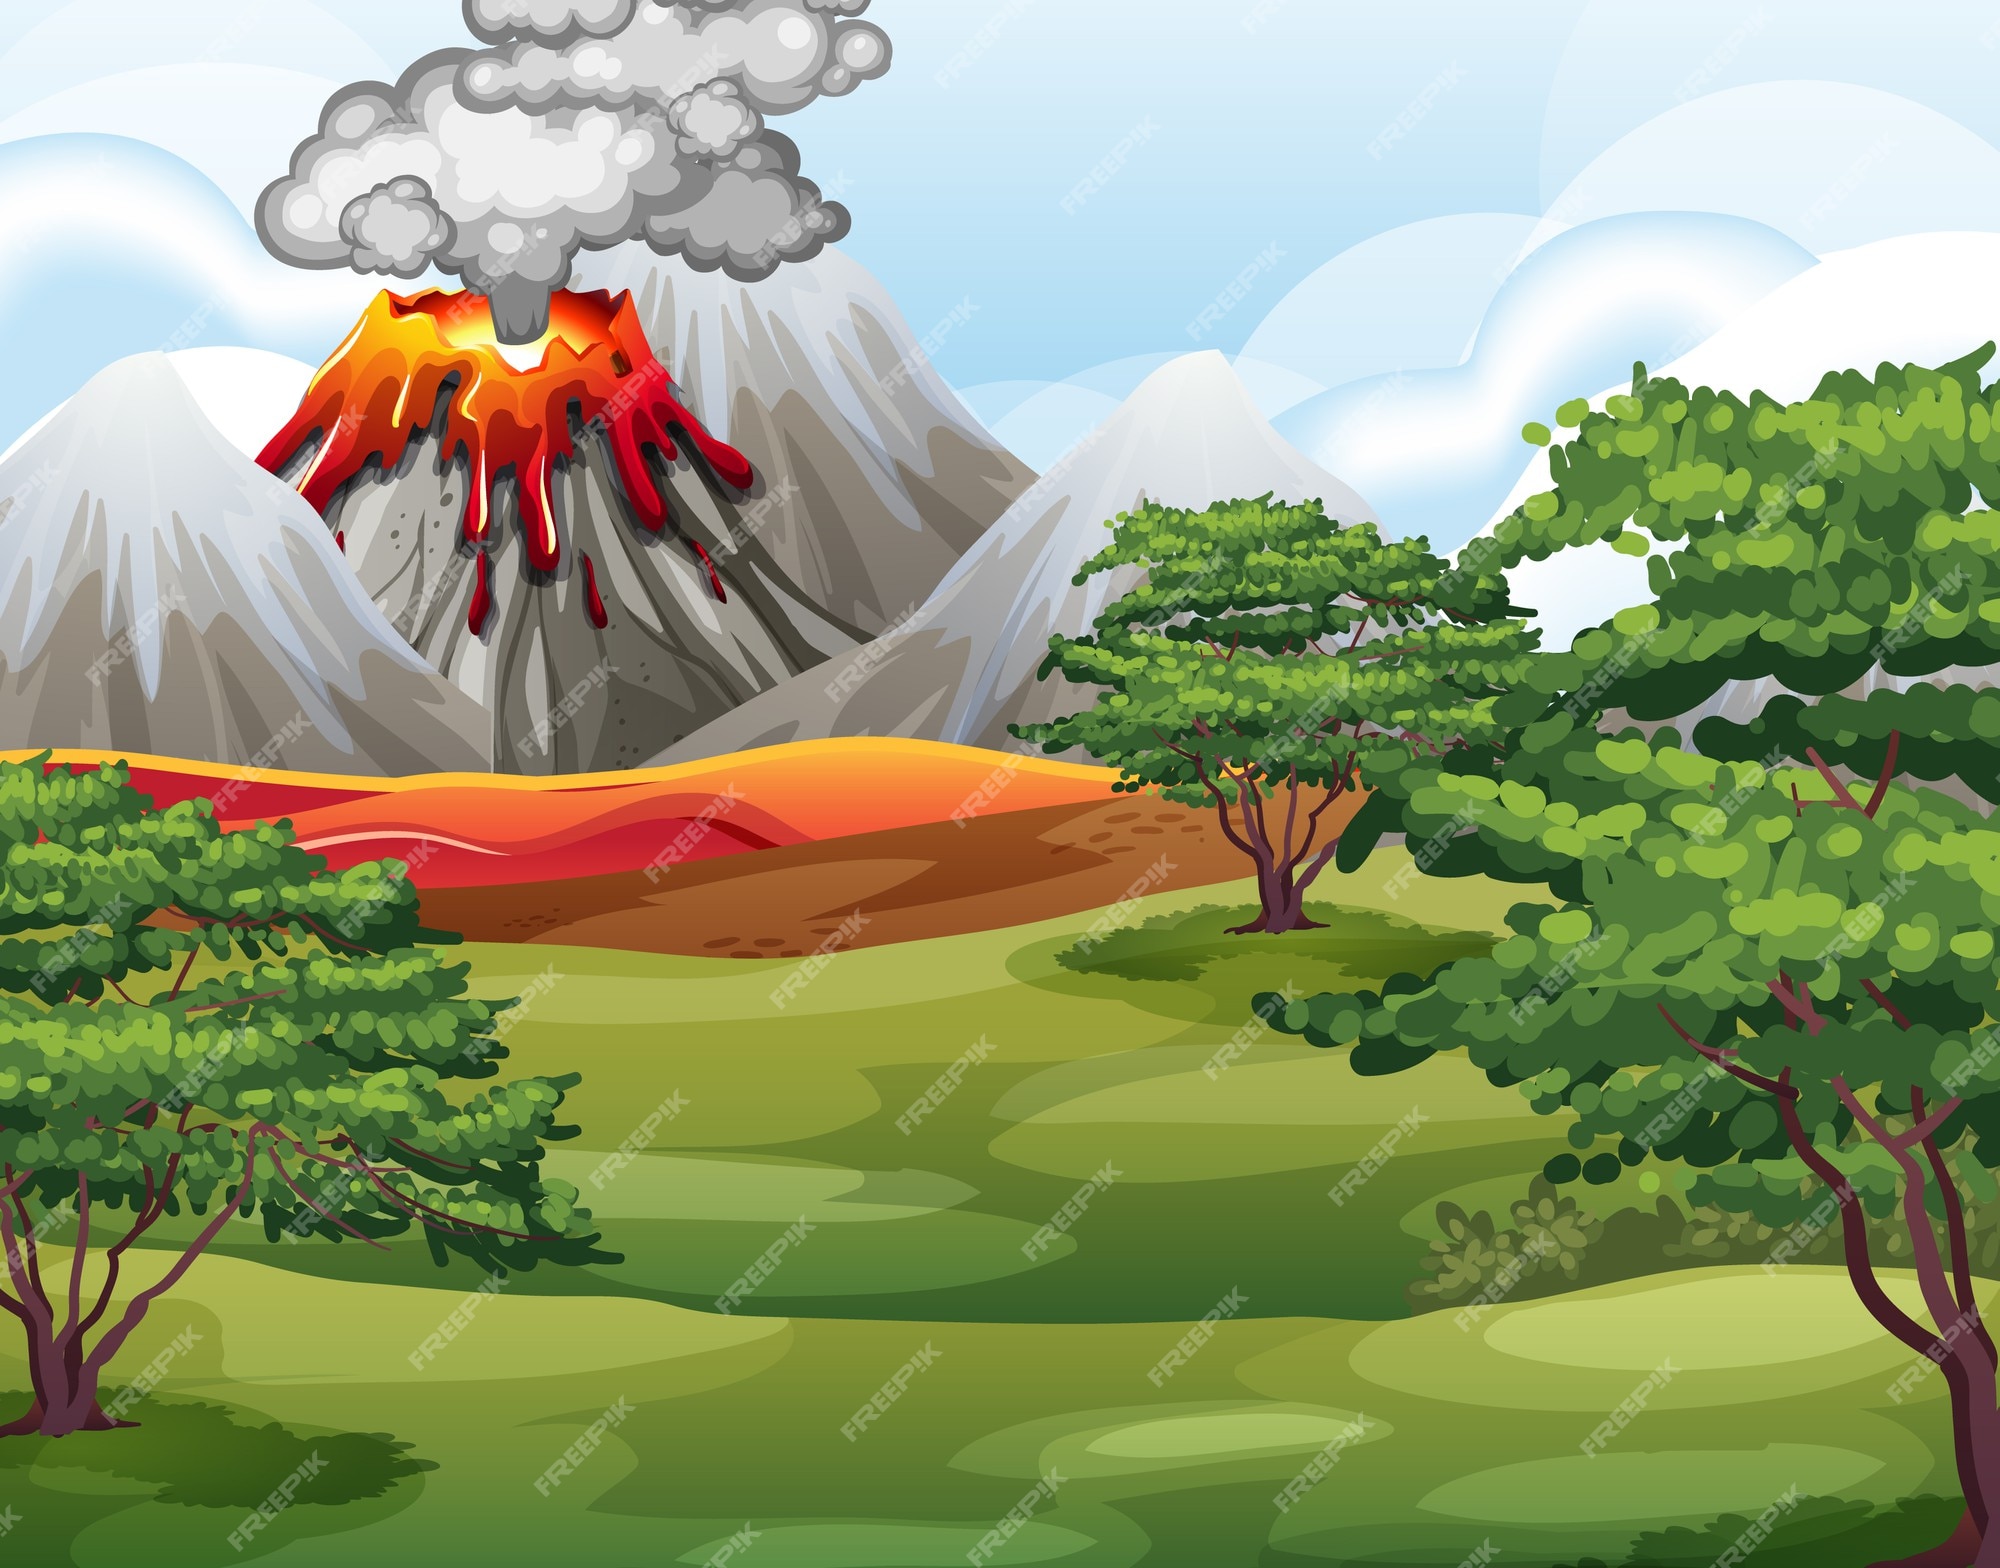 Imágenes de Volcan Animado - Descarga gratuita en Freepik